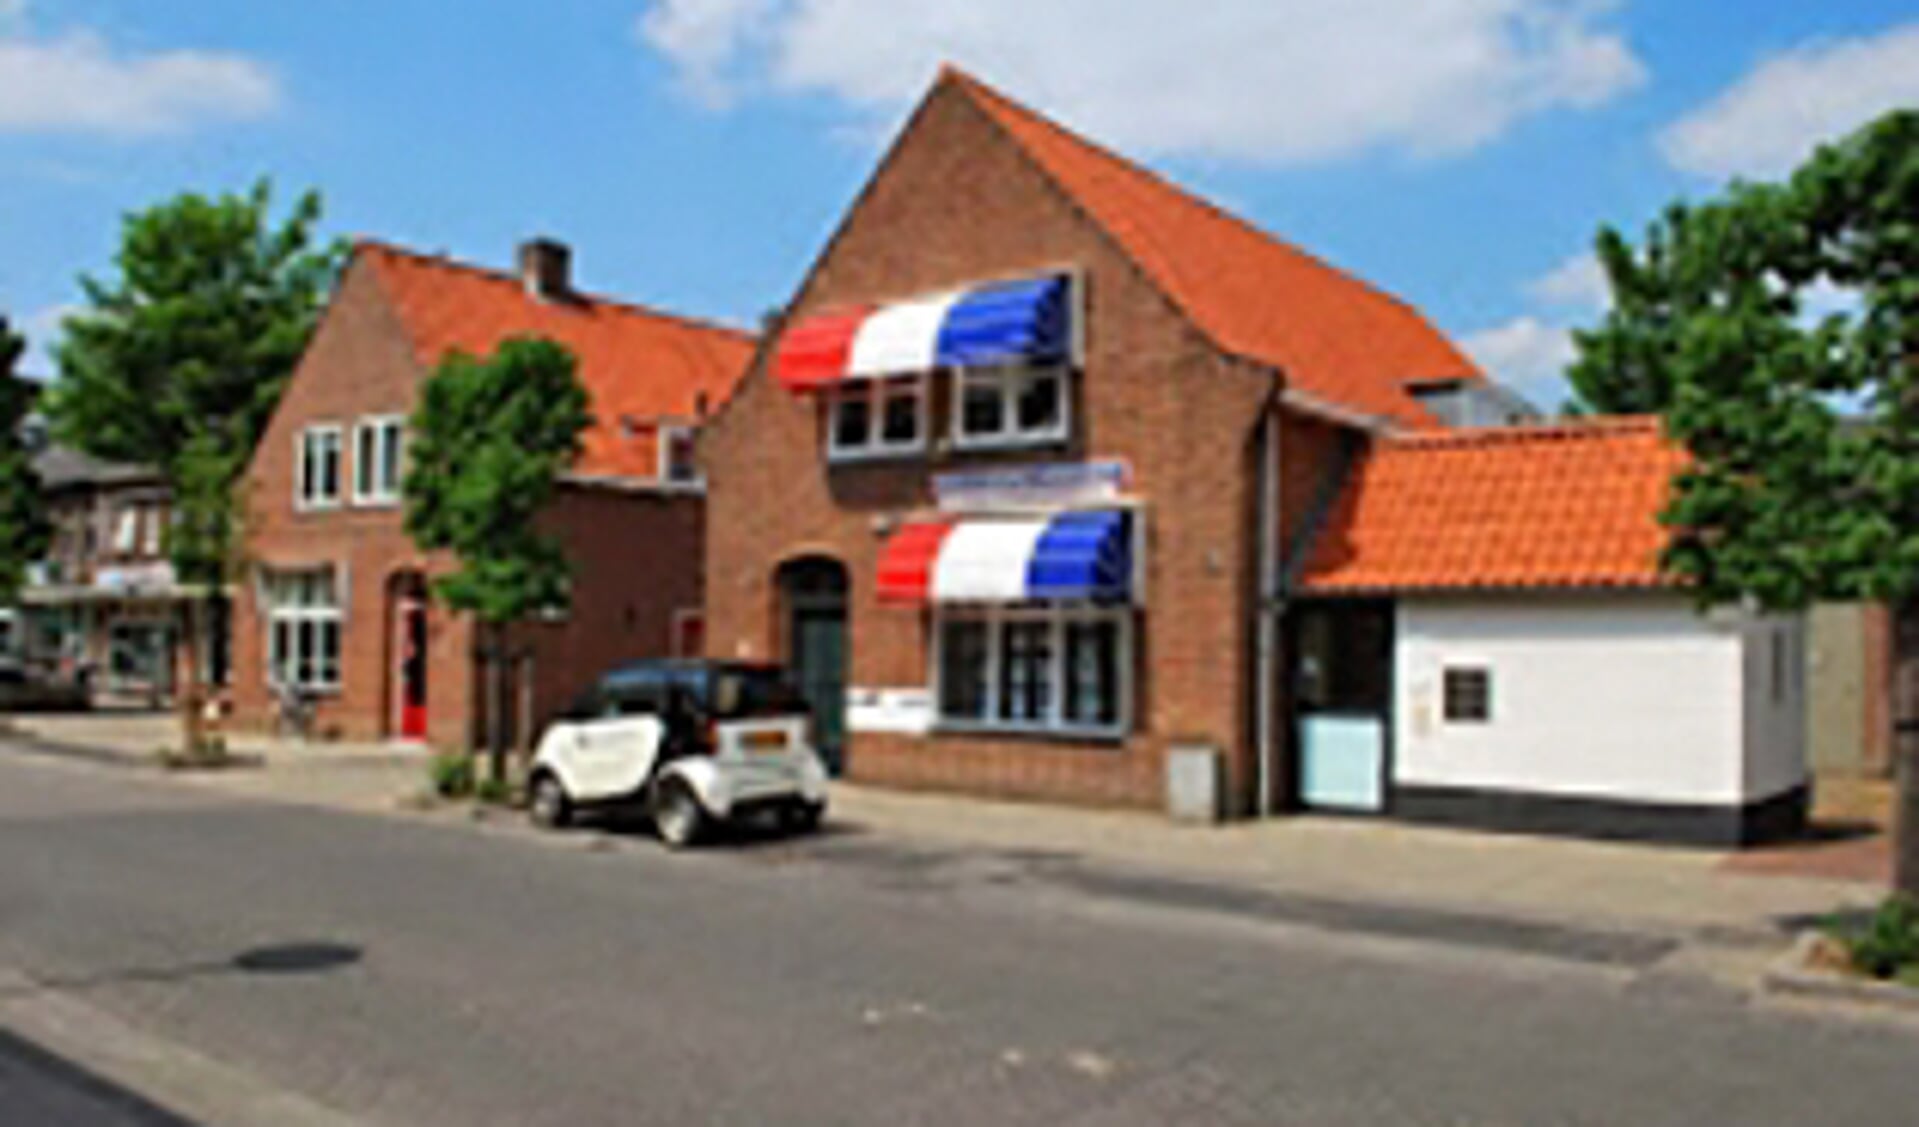 Tekelenburg & Advocaat is gevestigd aan de Dorpsstraat 251 in Scherpenzeel.